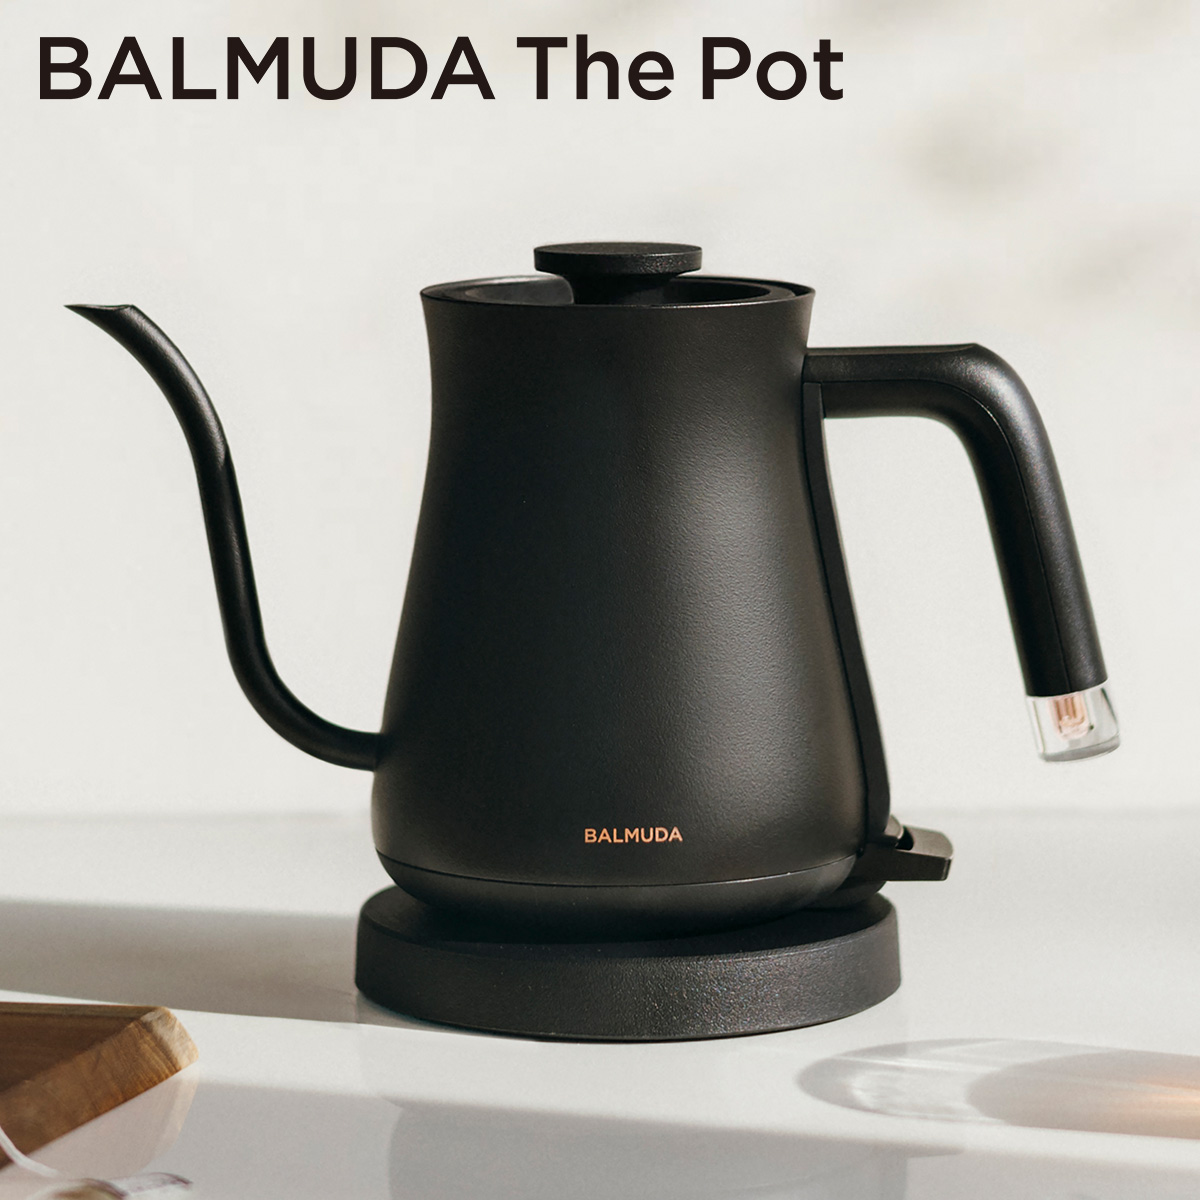 BALMUDA The Pot 正規品 ザ・ポット 電気ケトル ドリップケトル おしゃれ ブラック